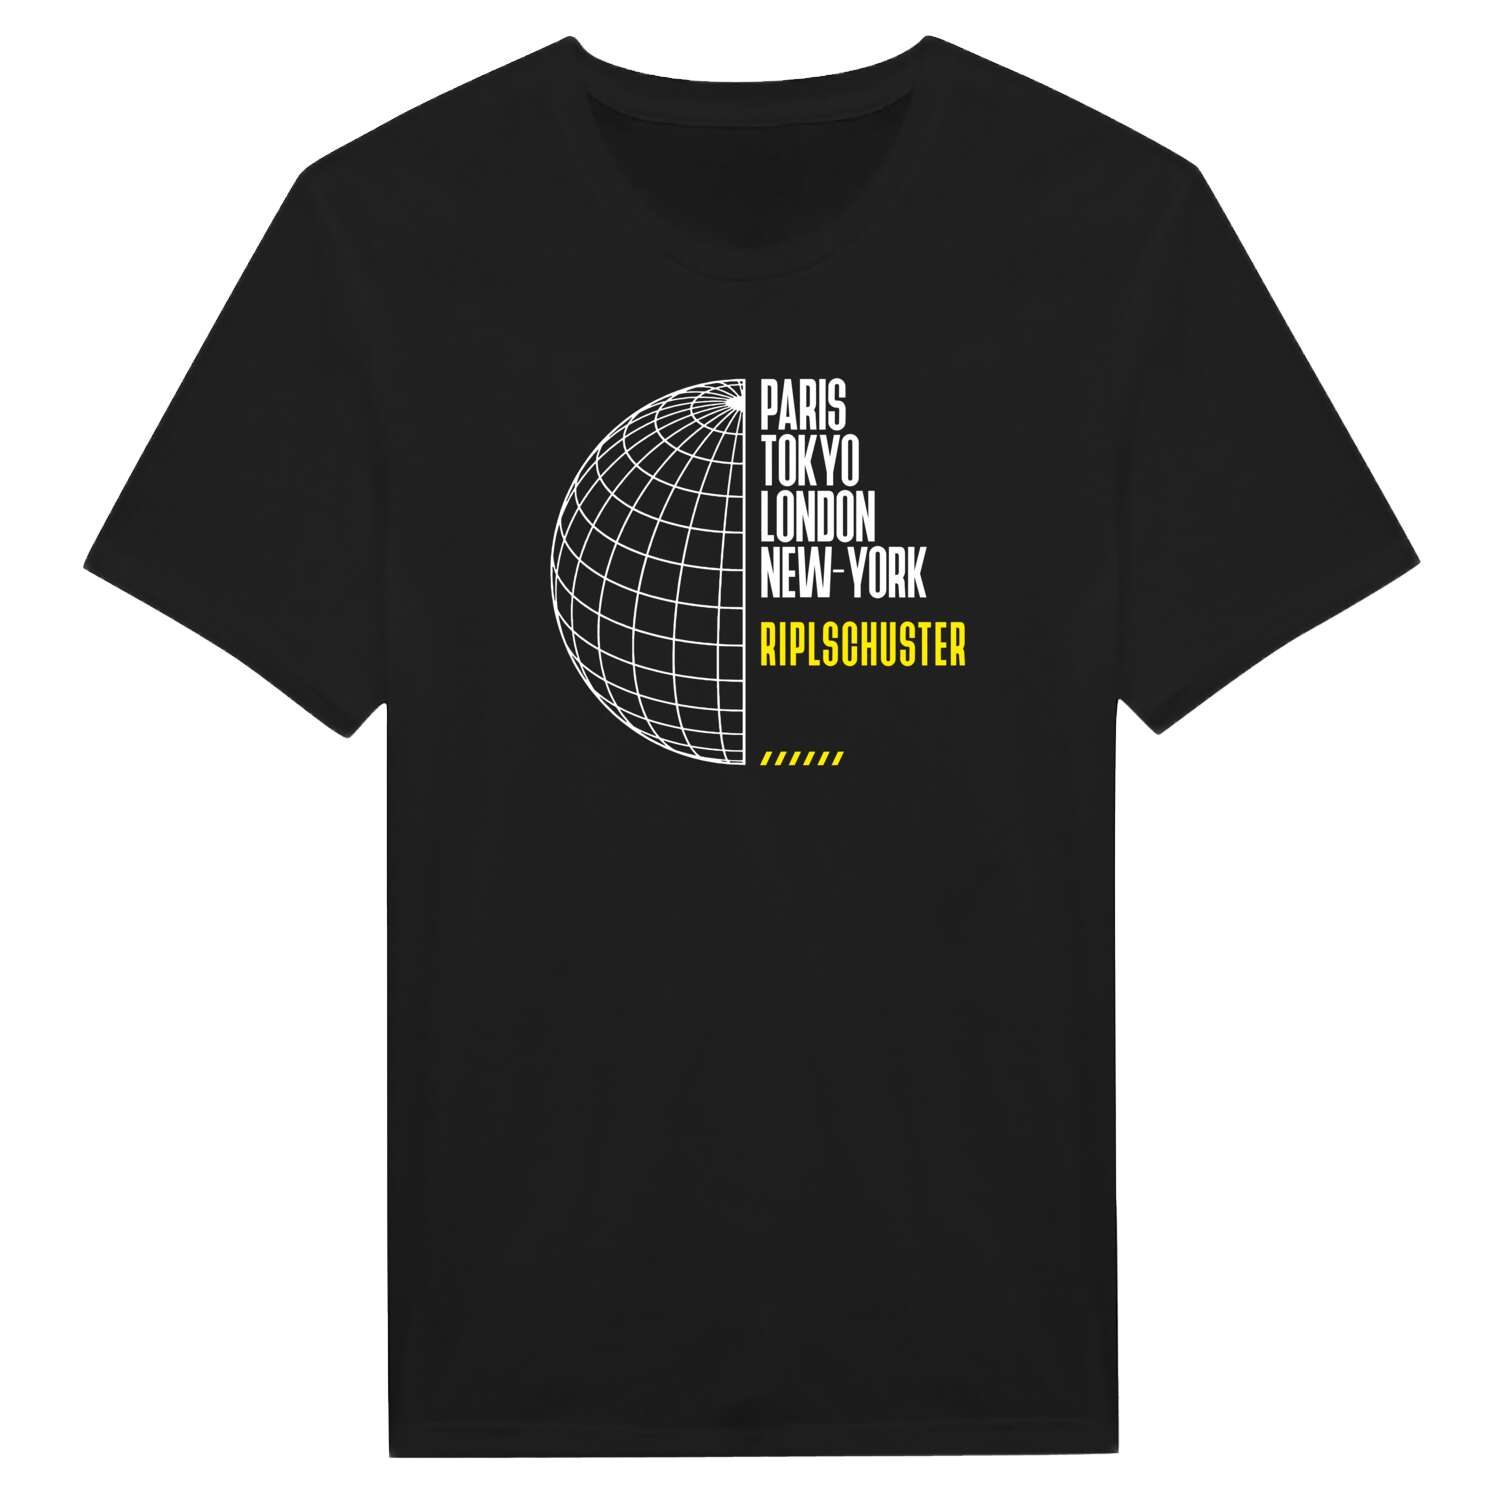 Riplschuster T-Shirt »Paris Tokyo London«